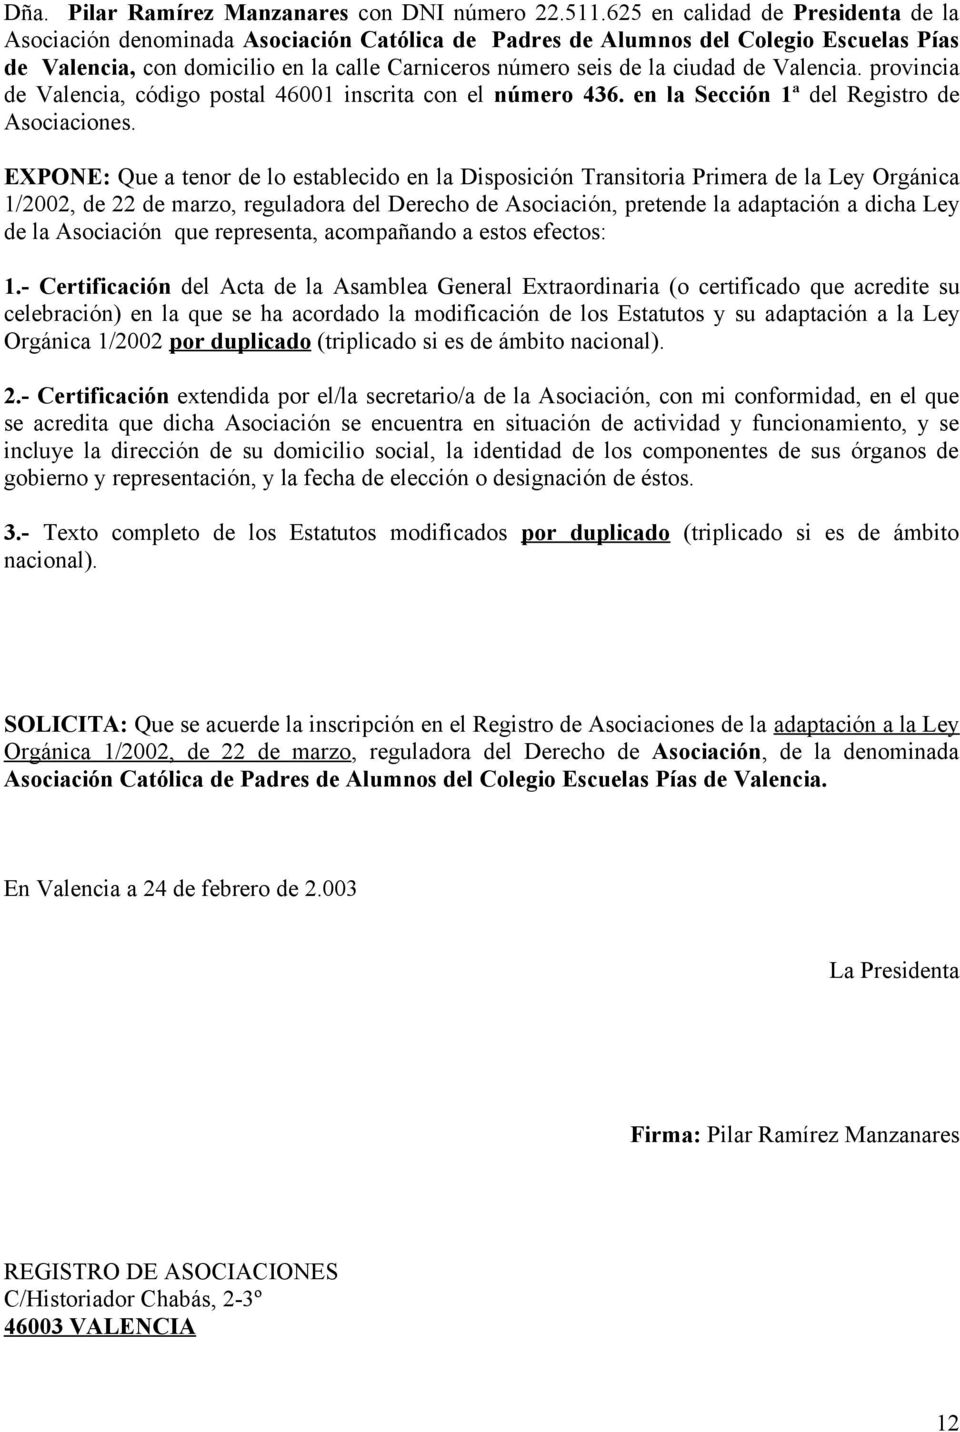 de Valencia. provincia de Valencia, código postal 46001 inscrita con el número 436. en la Sección 1ª del Registro de Asociaciones.